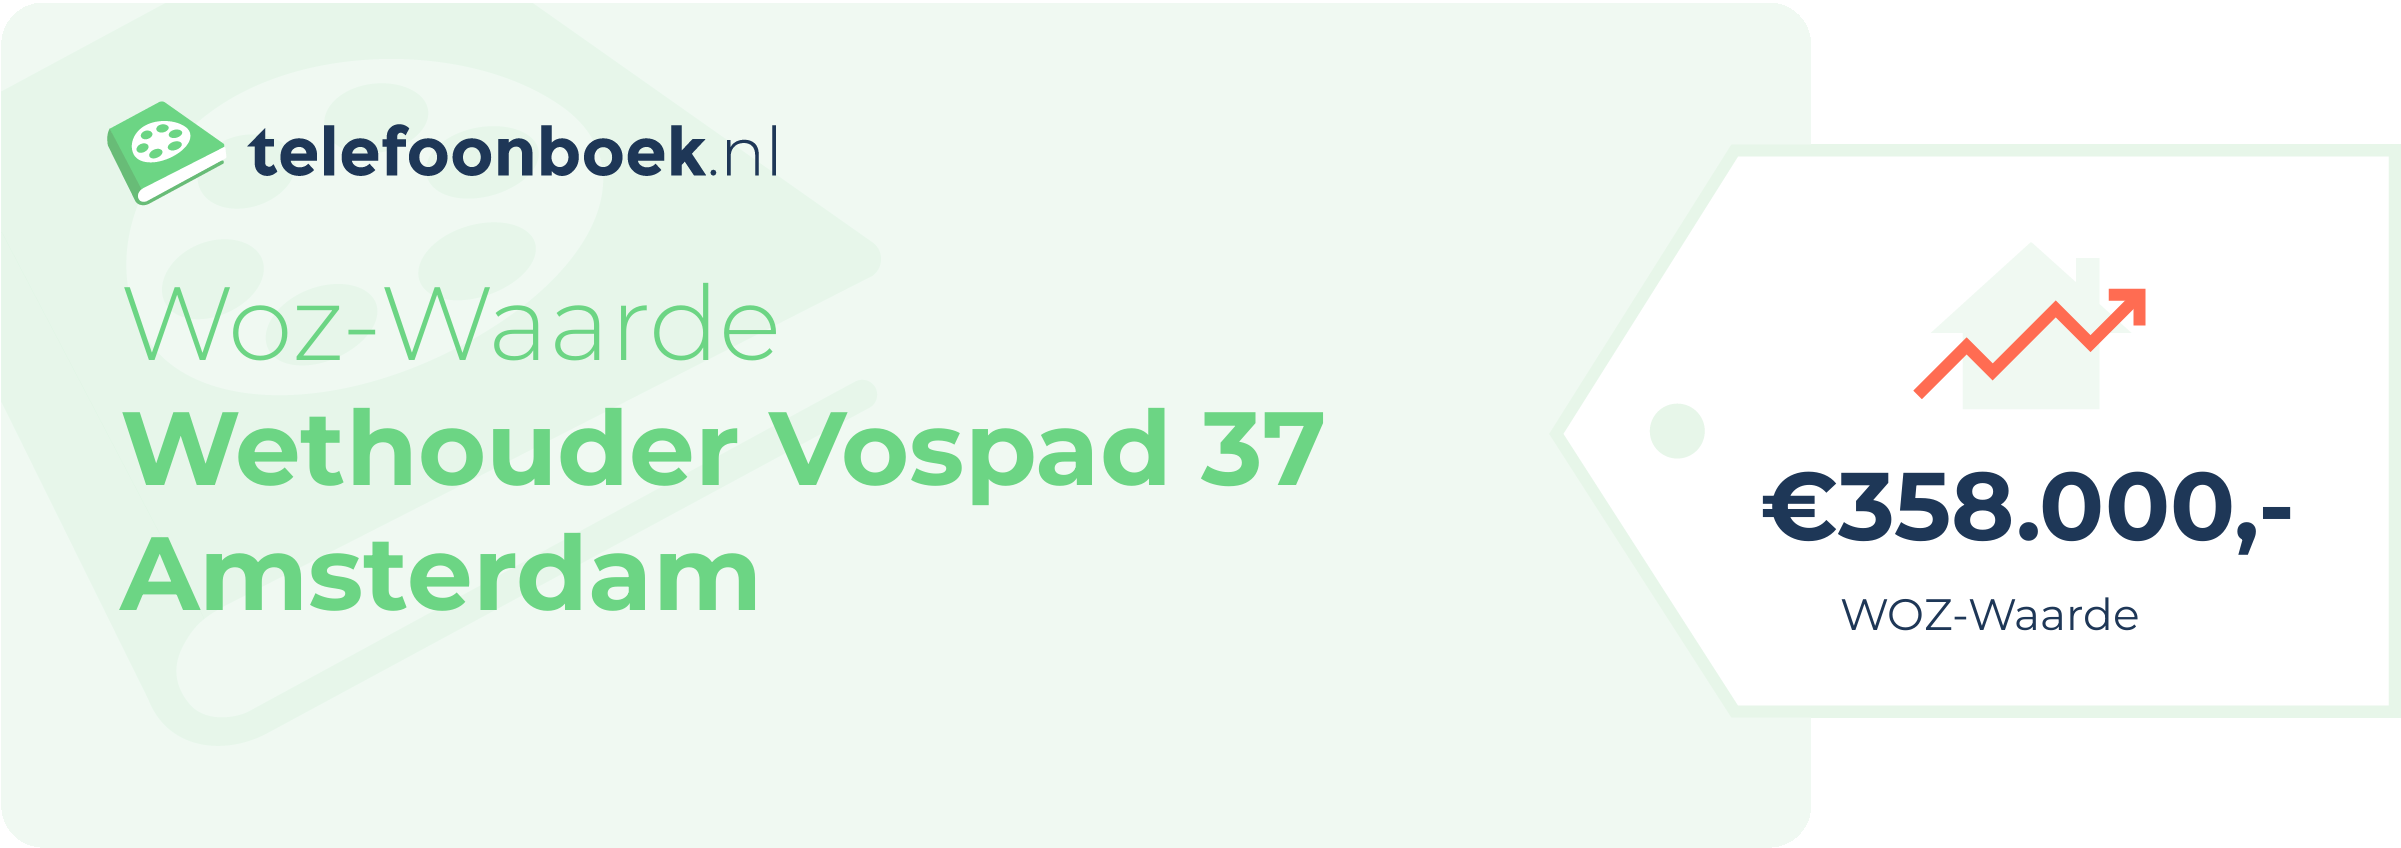 WOZ-waarde Wethouder Vospad 37 Amsterdam